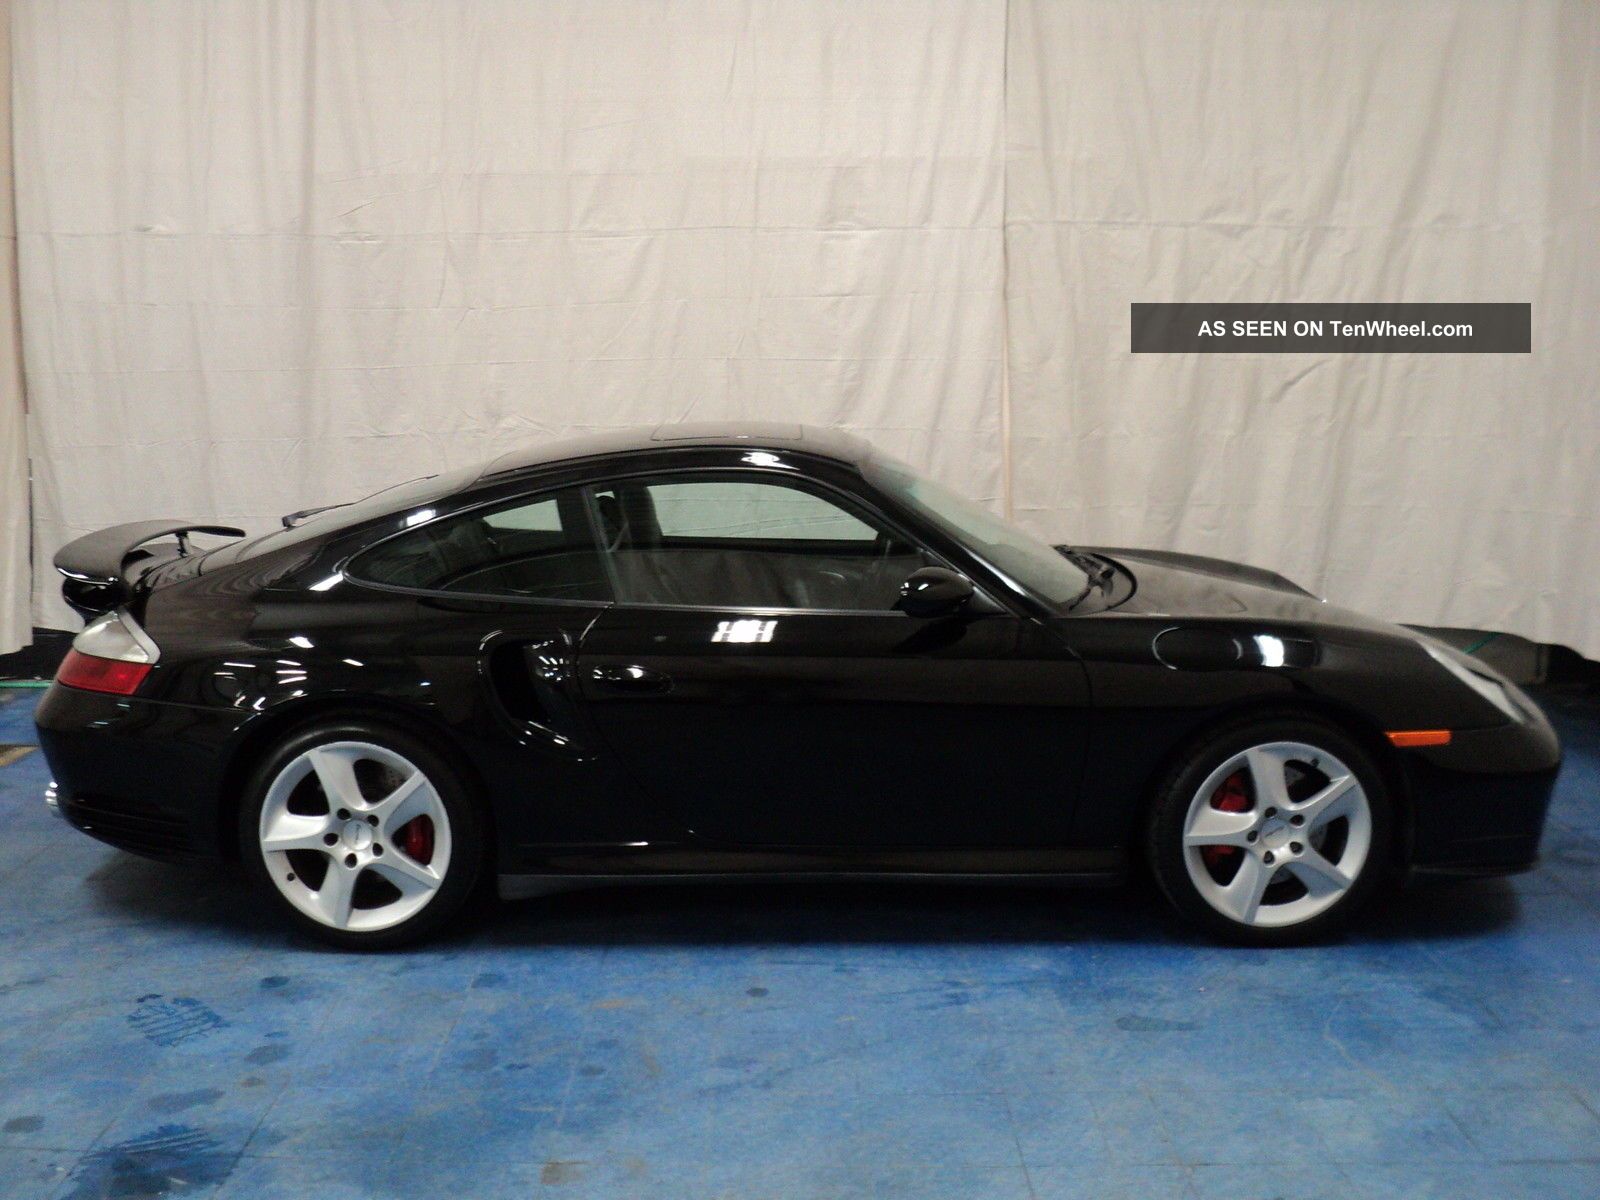 2003 Porsche 911 Turbo,  Blk / Blk,  16k,  6spd,  Fabspeed Exhaust,  Find 911 photo